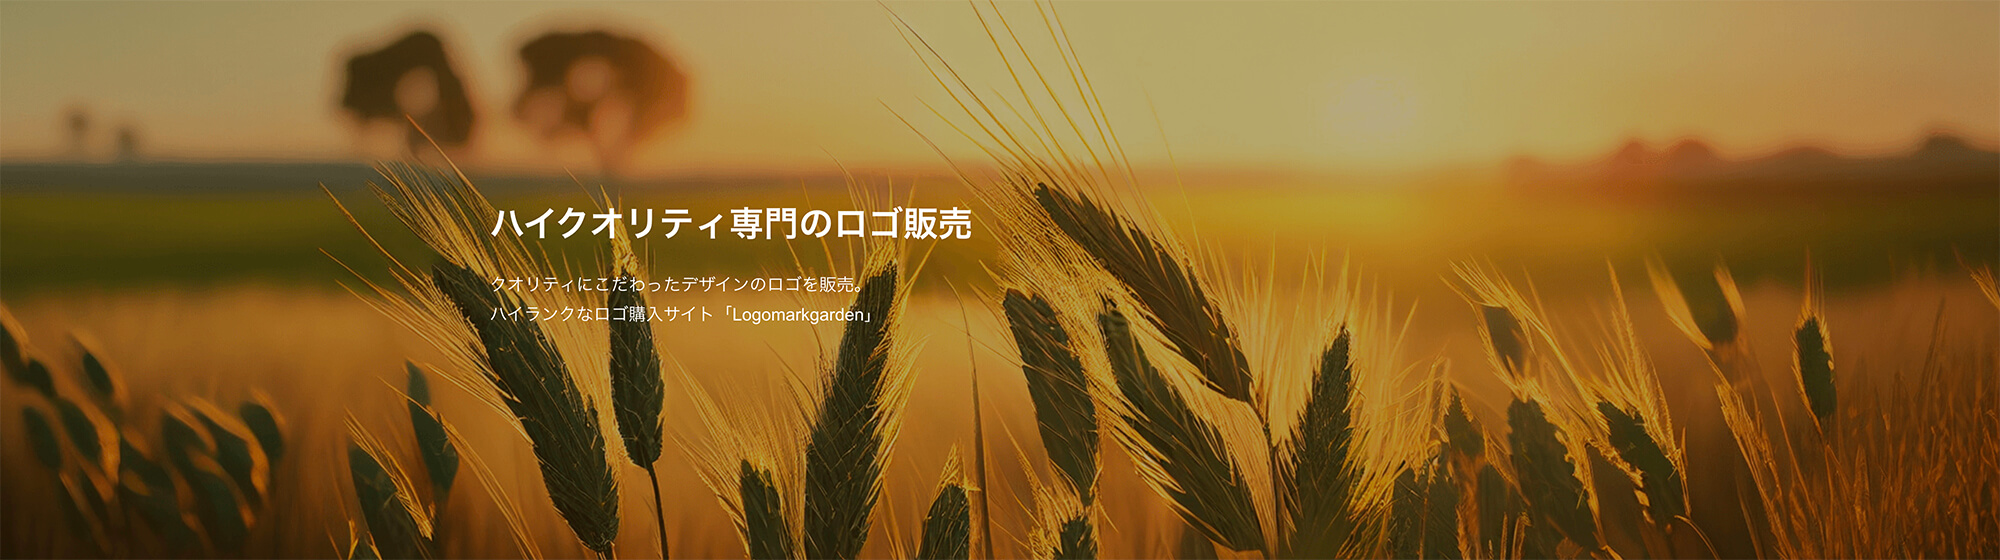 シンプルロゴ作成依頼サイトのロゴジャパン-ロゴマークガーデンのイメージ画像